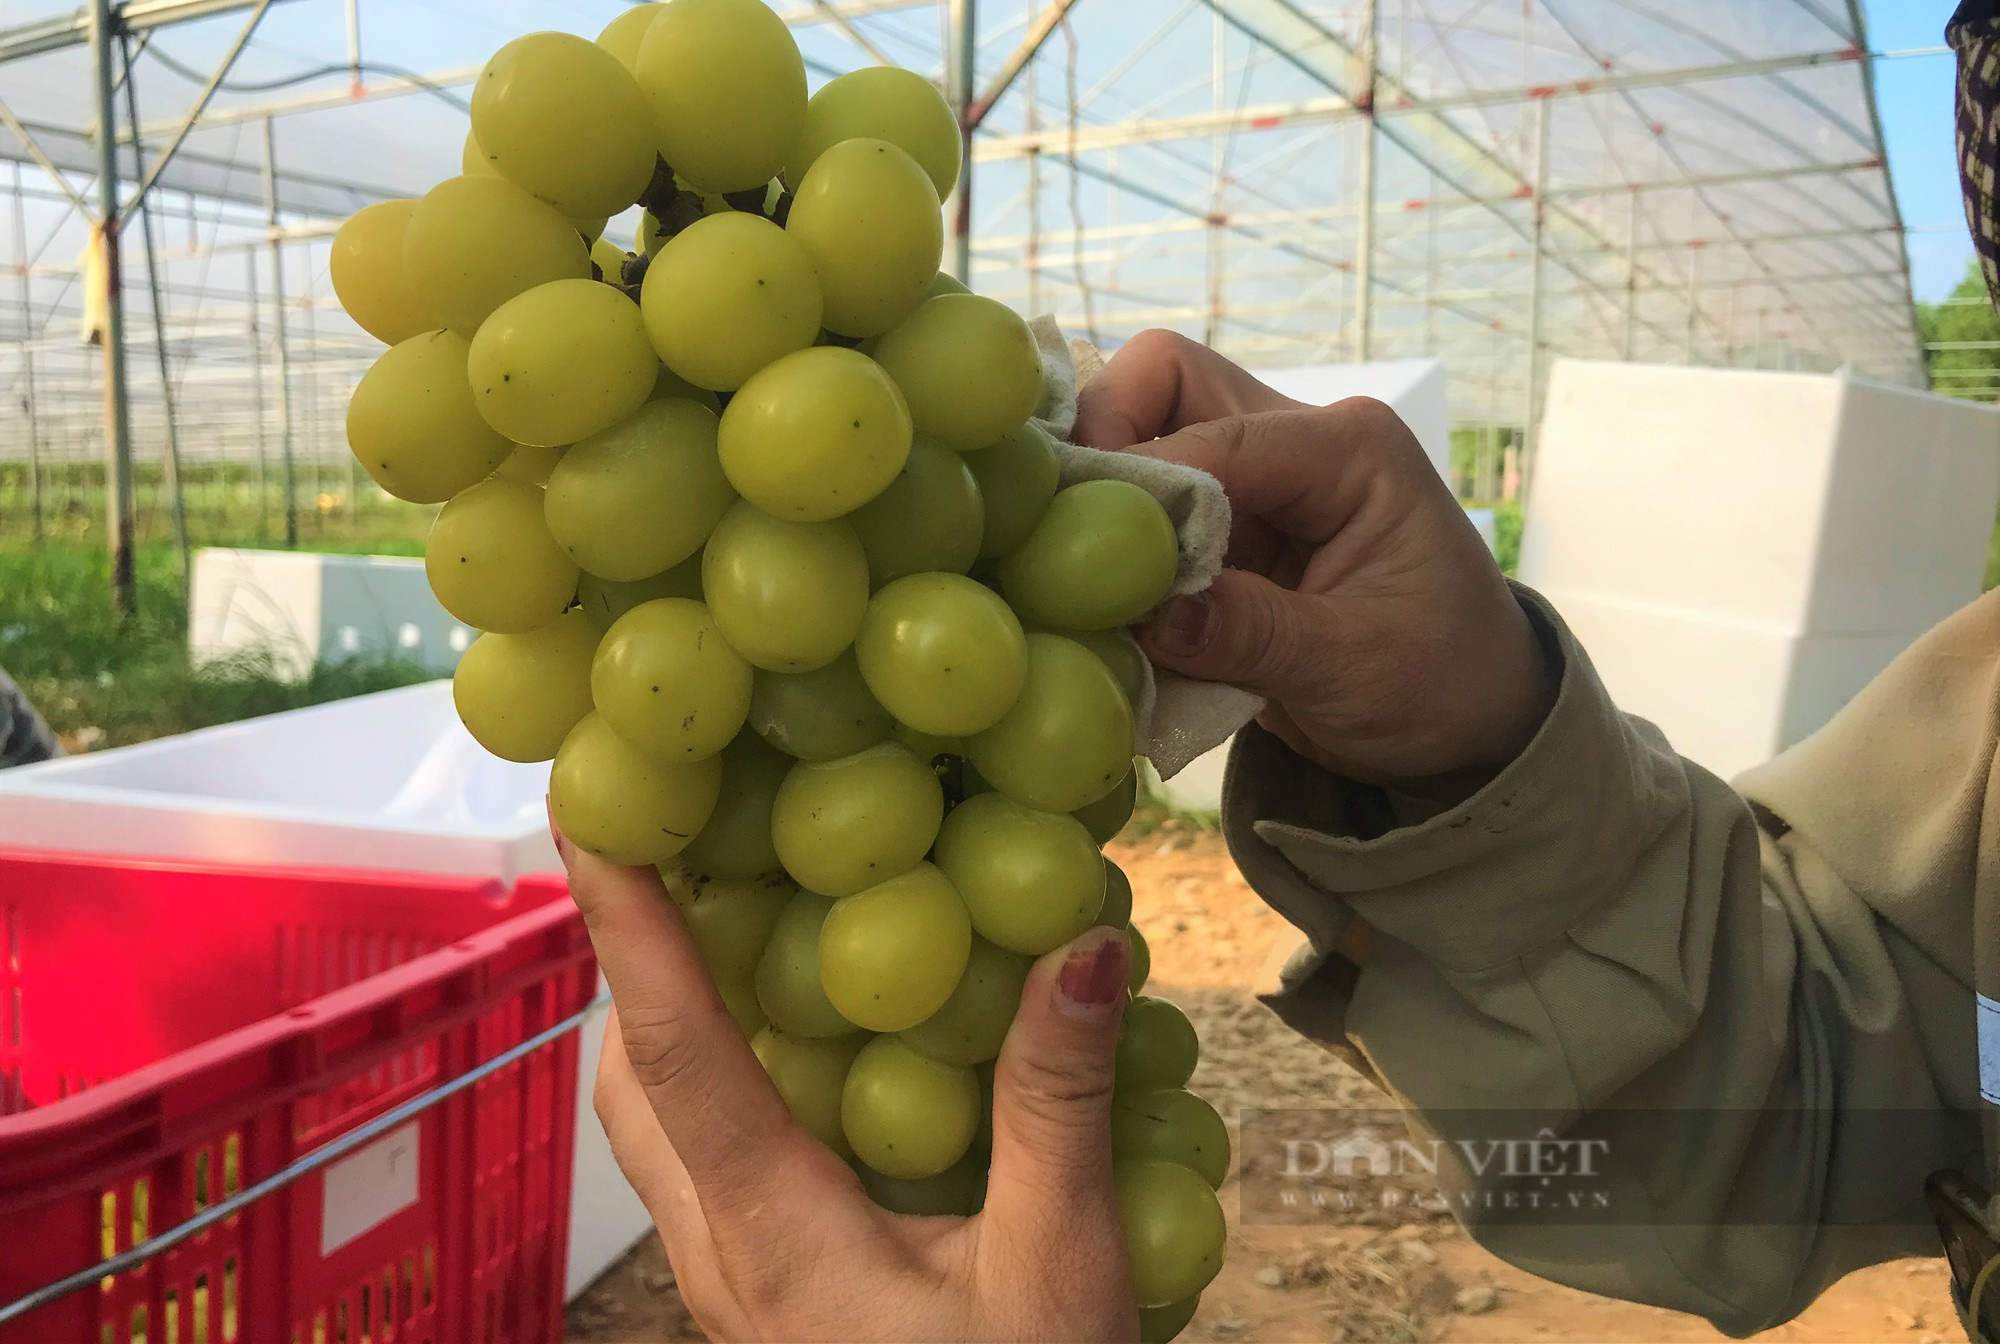 Sản xuất nông sản sạch ở Nghệ An: Trang trại công nghệ cao trồng đủ thứ rau, củ, quả sạch - Ảnh 5.